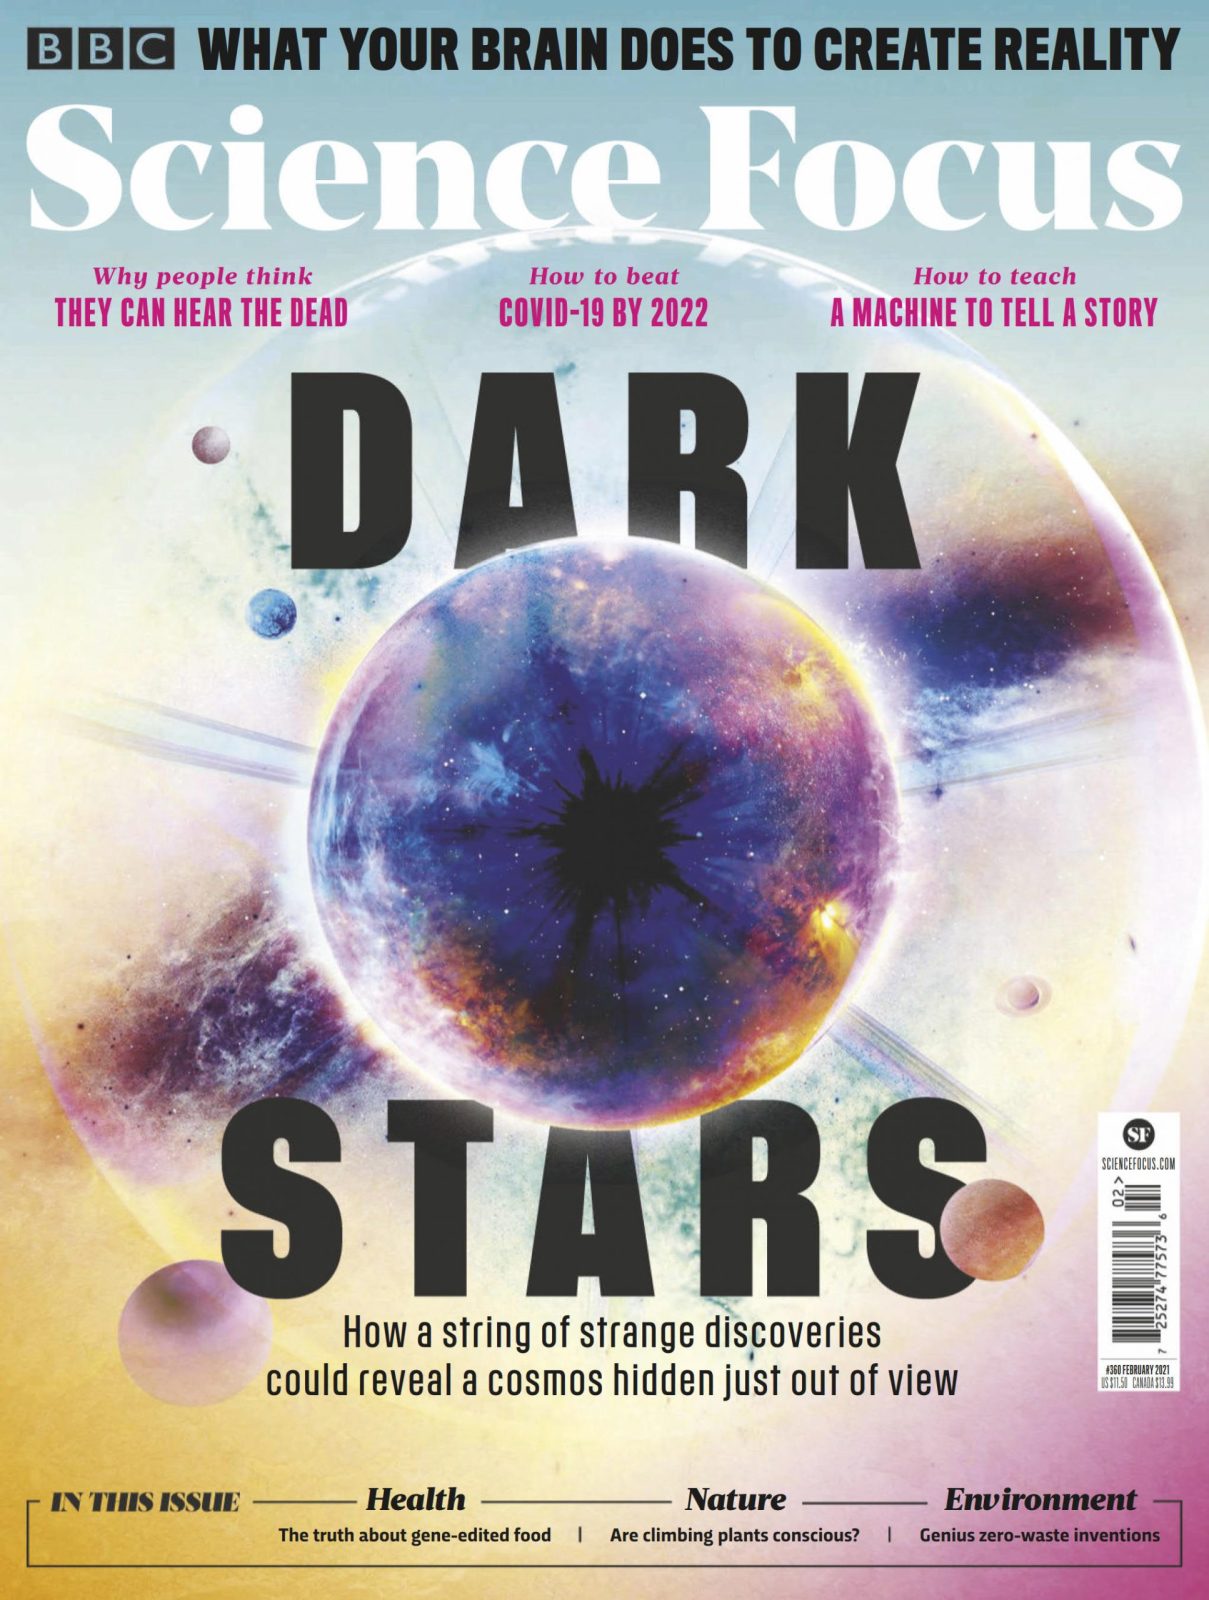 BBC Science Focus 科学聚焦杂志FEBRUARY2021